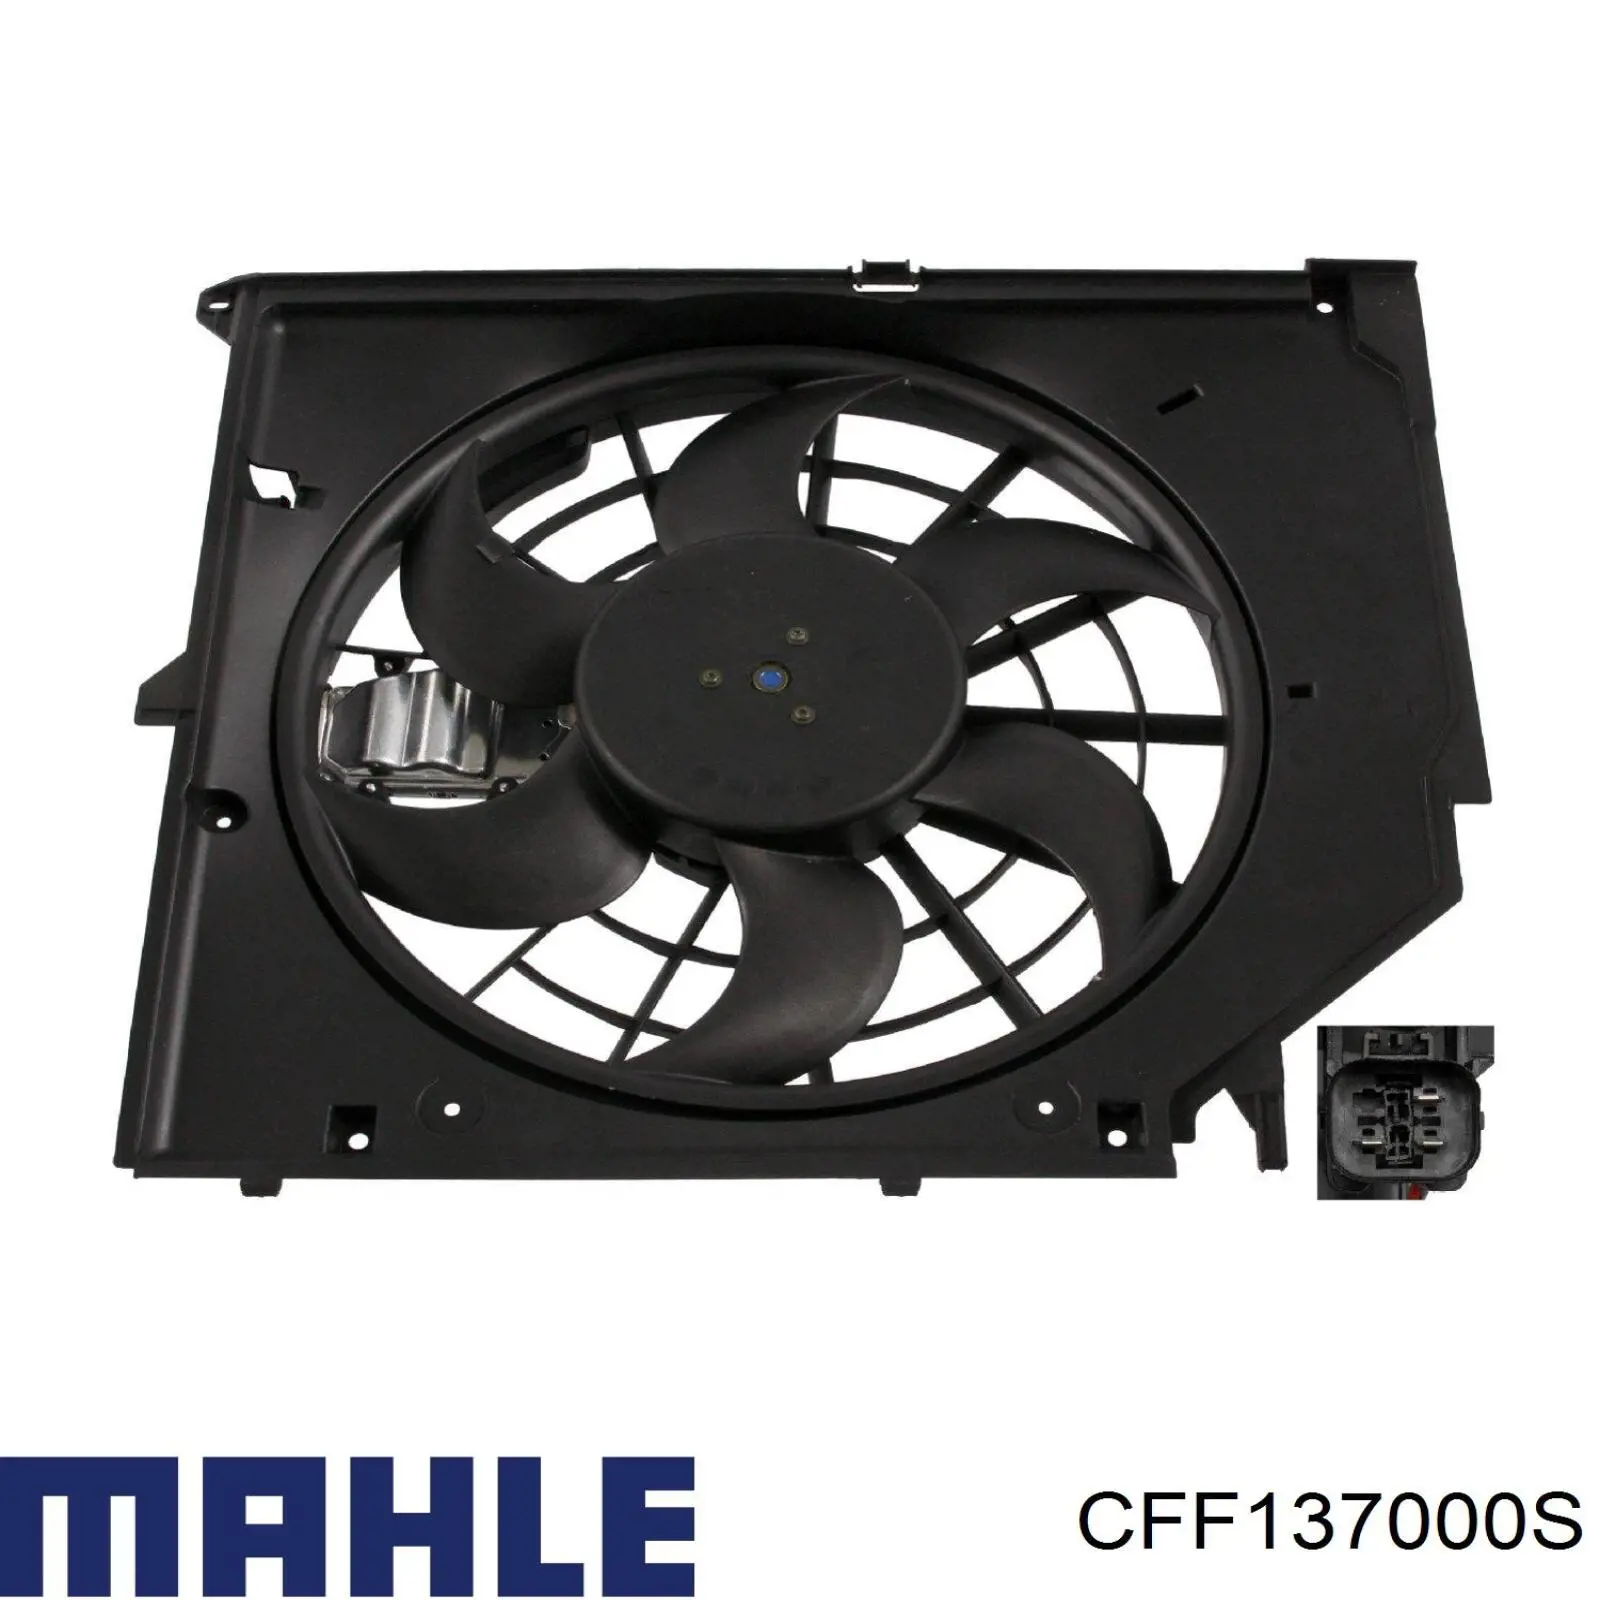 CFF 137 000S Mahle Original difusor de radiador, ventilador de refrigeración, condensador del aire acondicionado, completo con motor y rodete